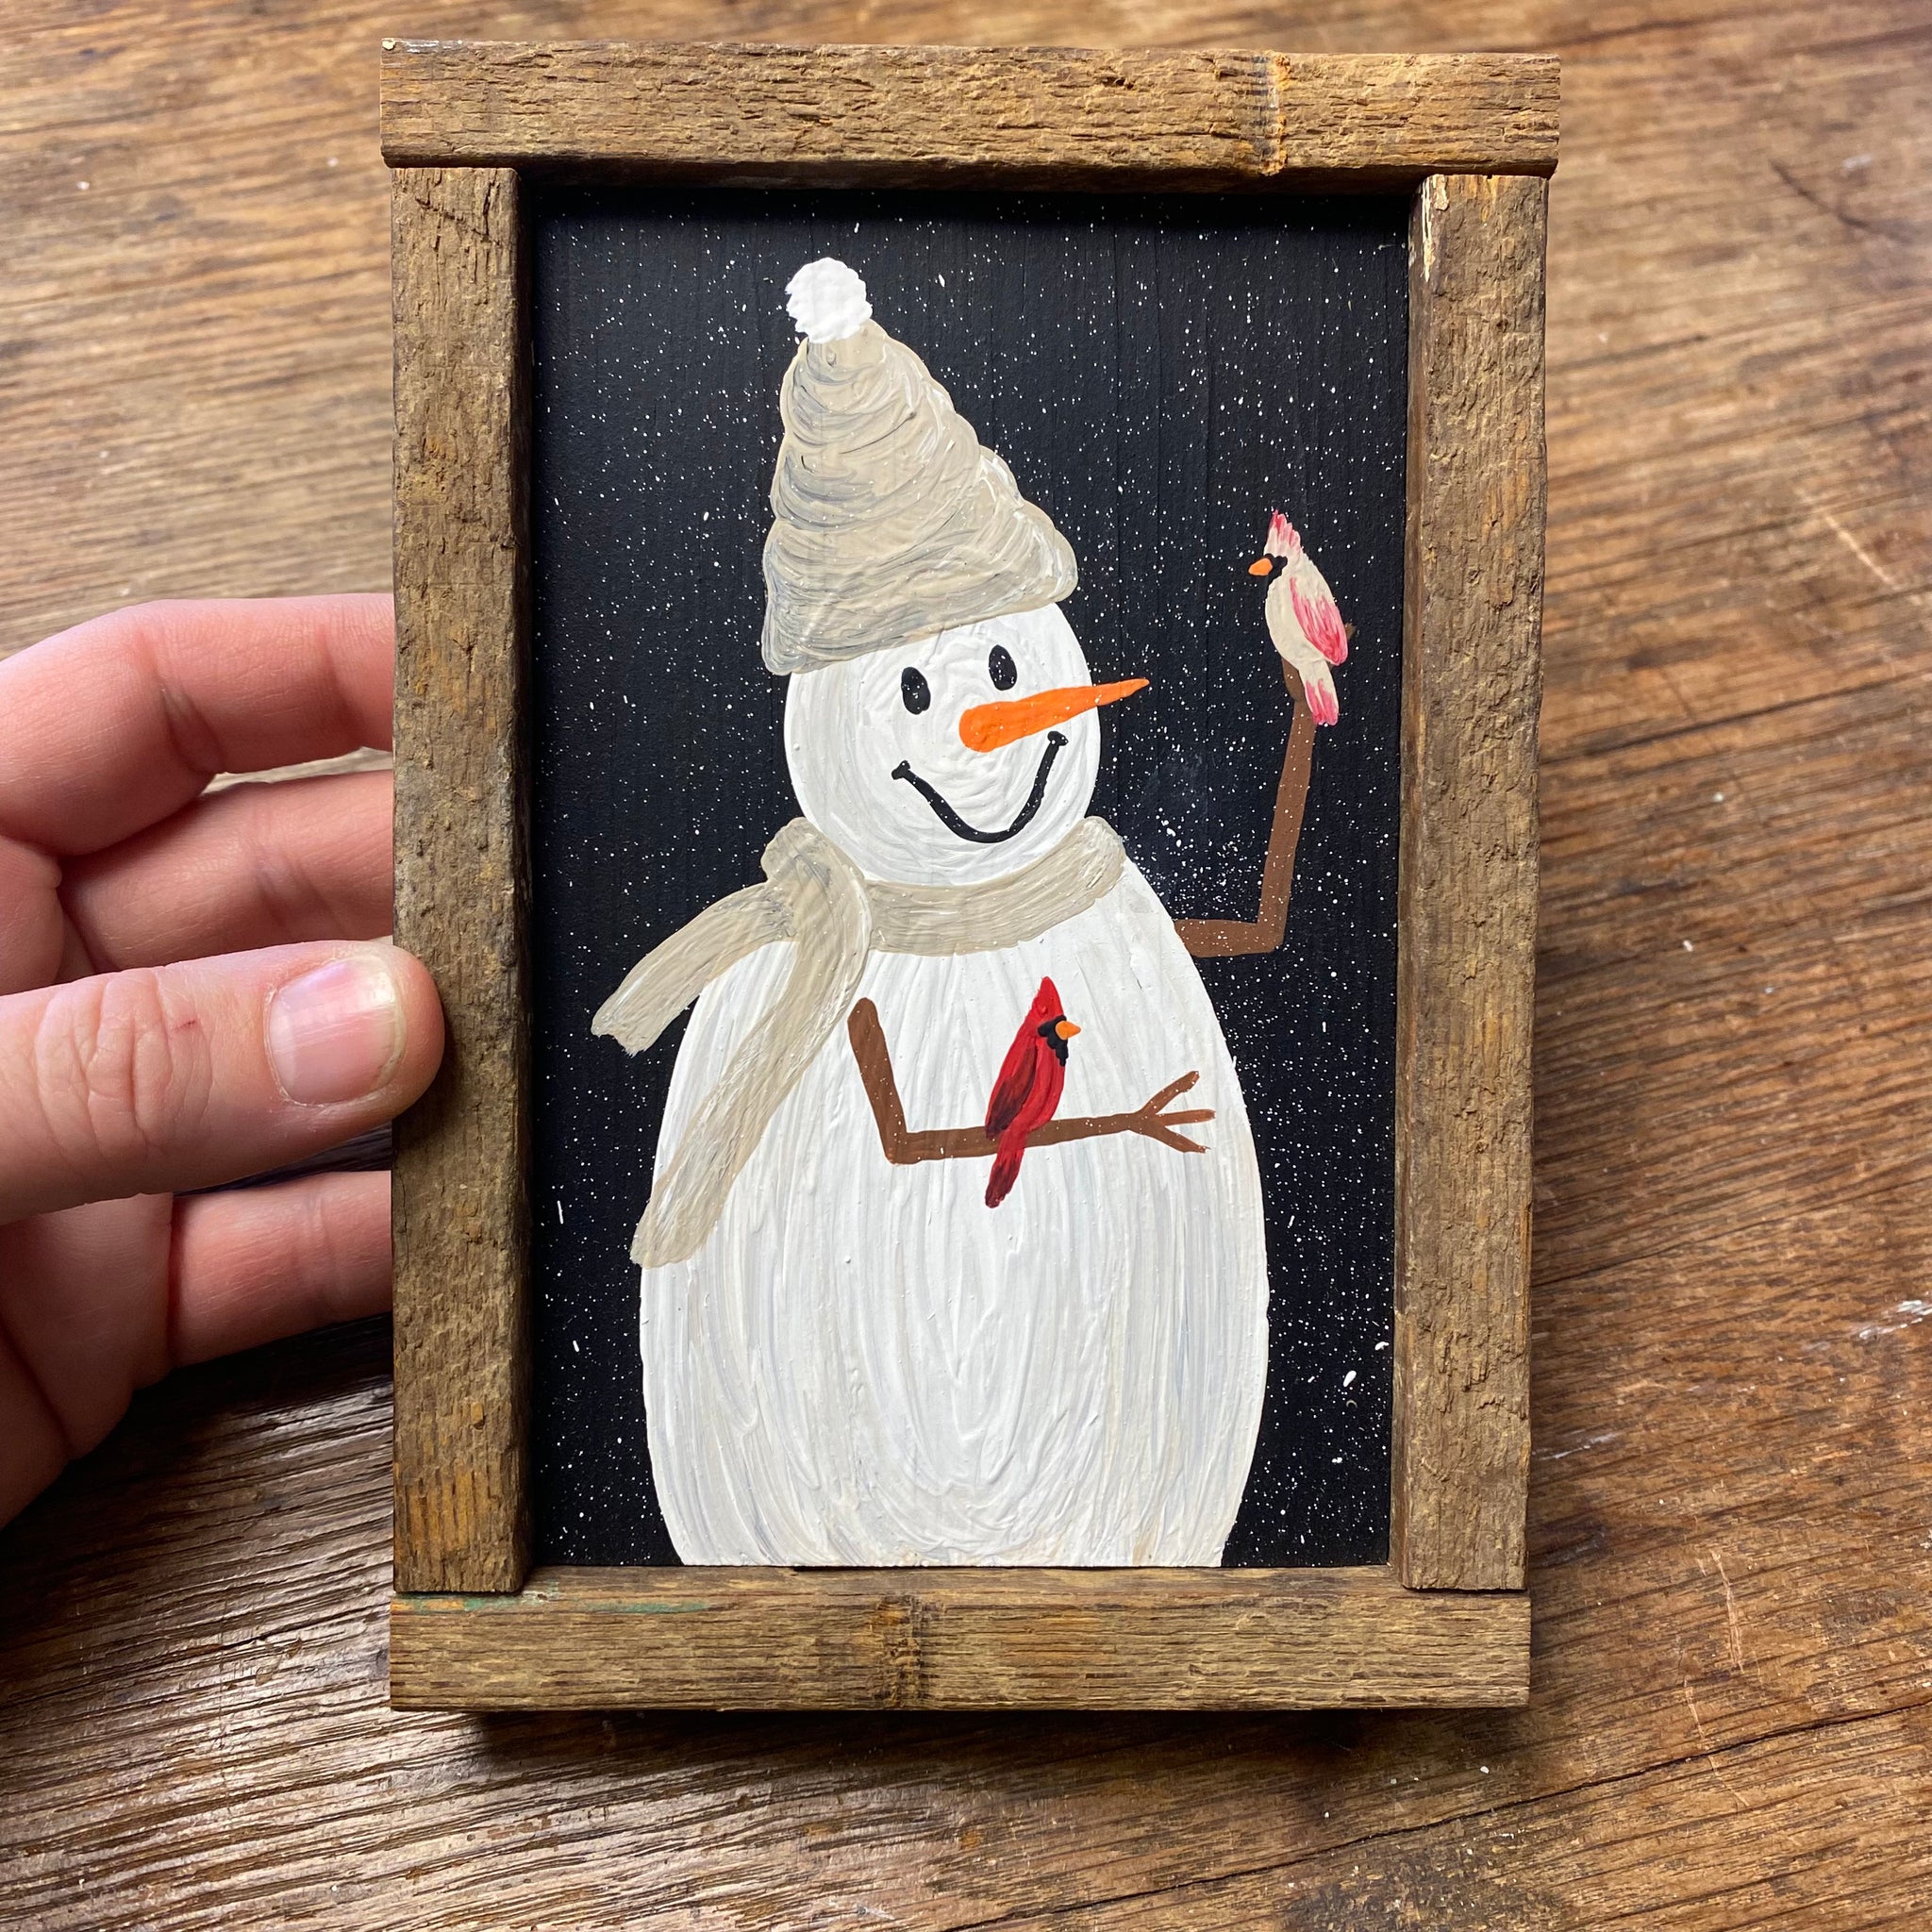 Snowman with tan beanie